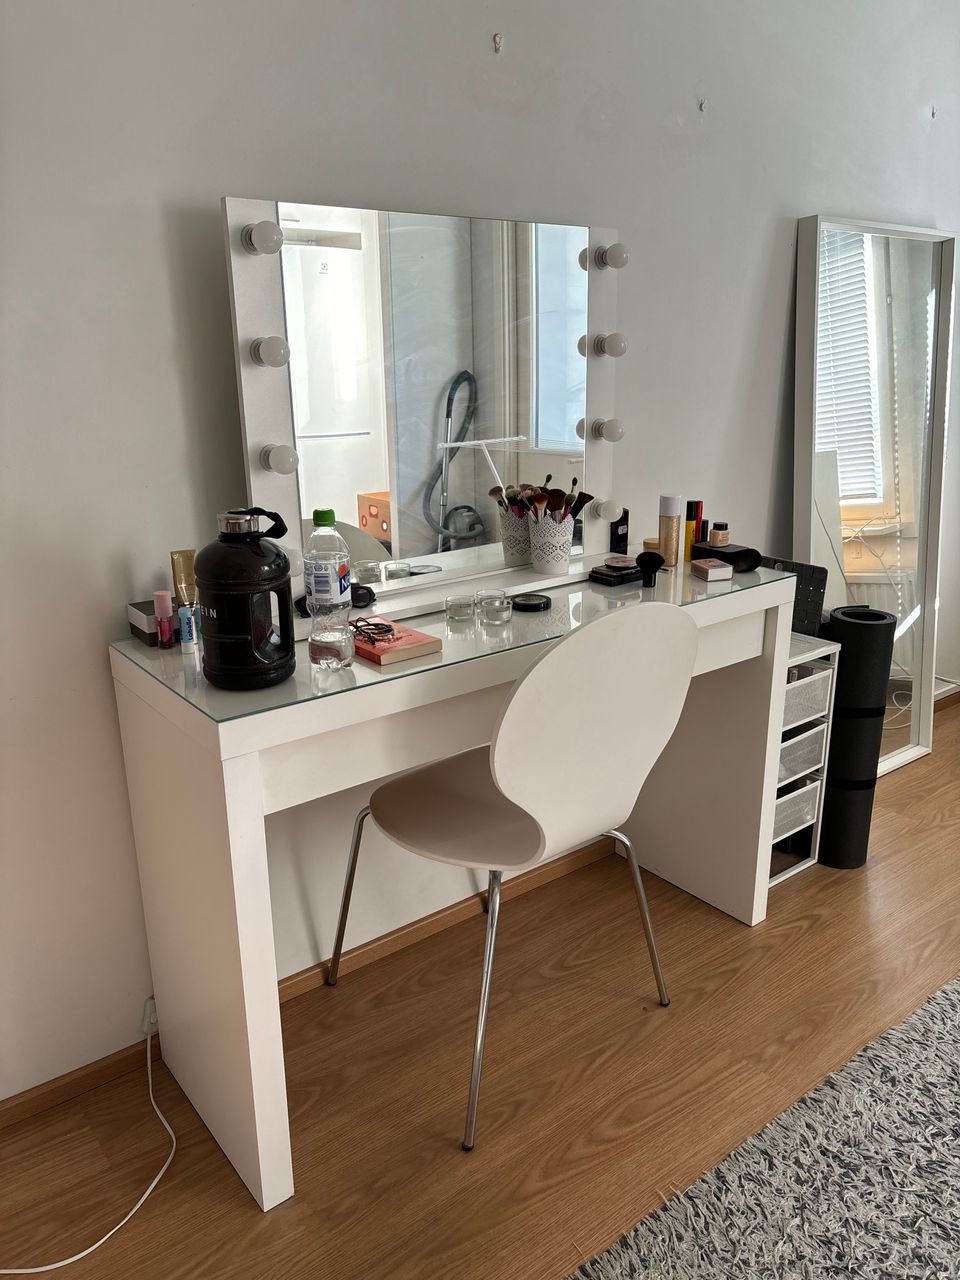 Ikean kampauspöytä ja peili